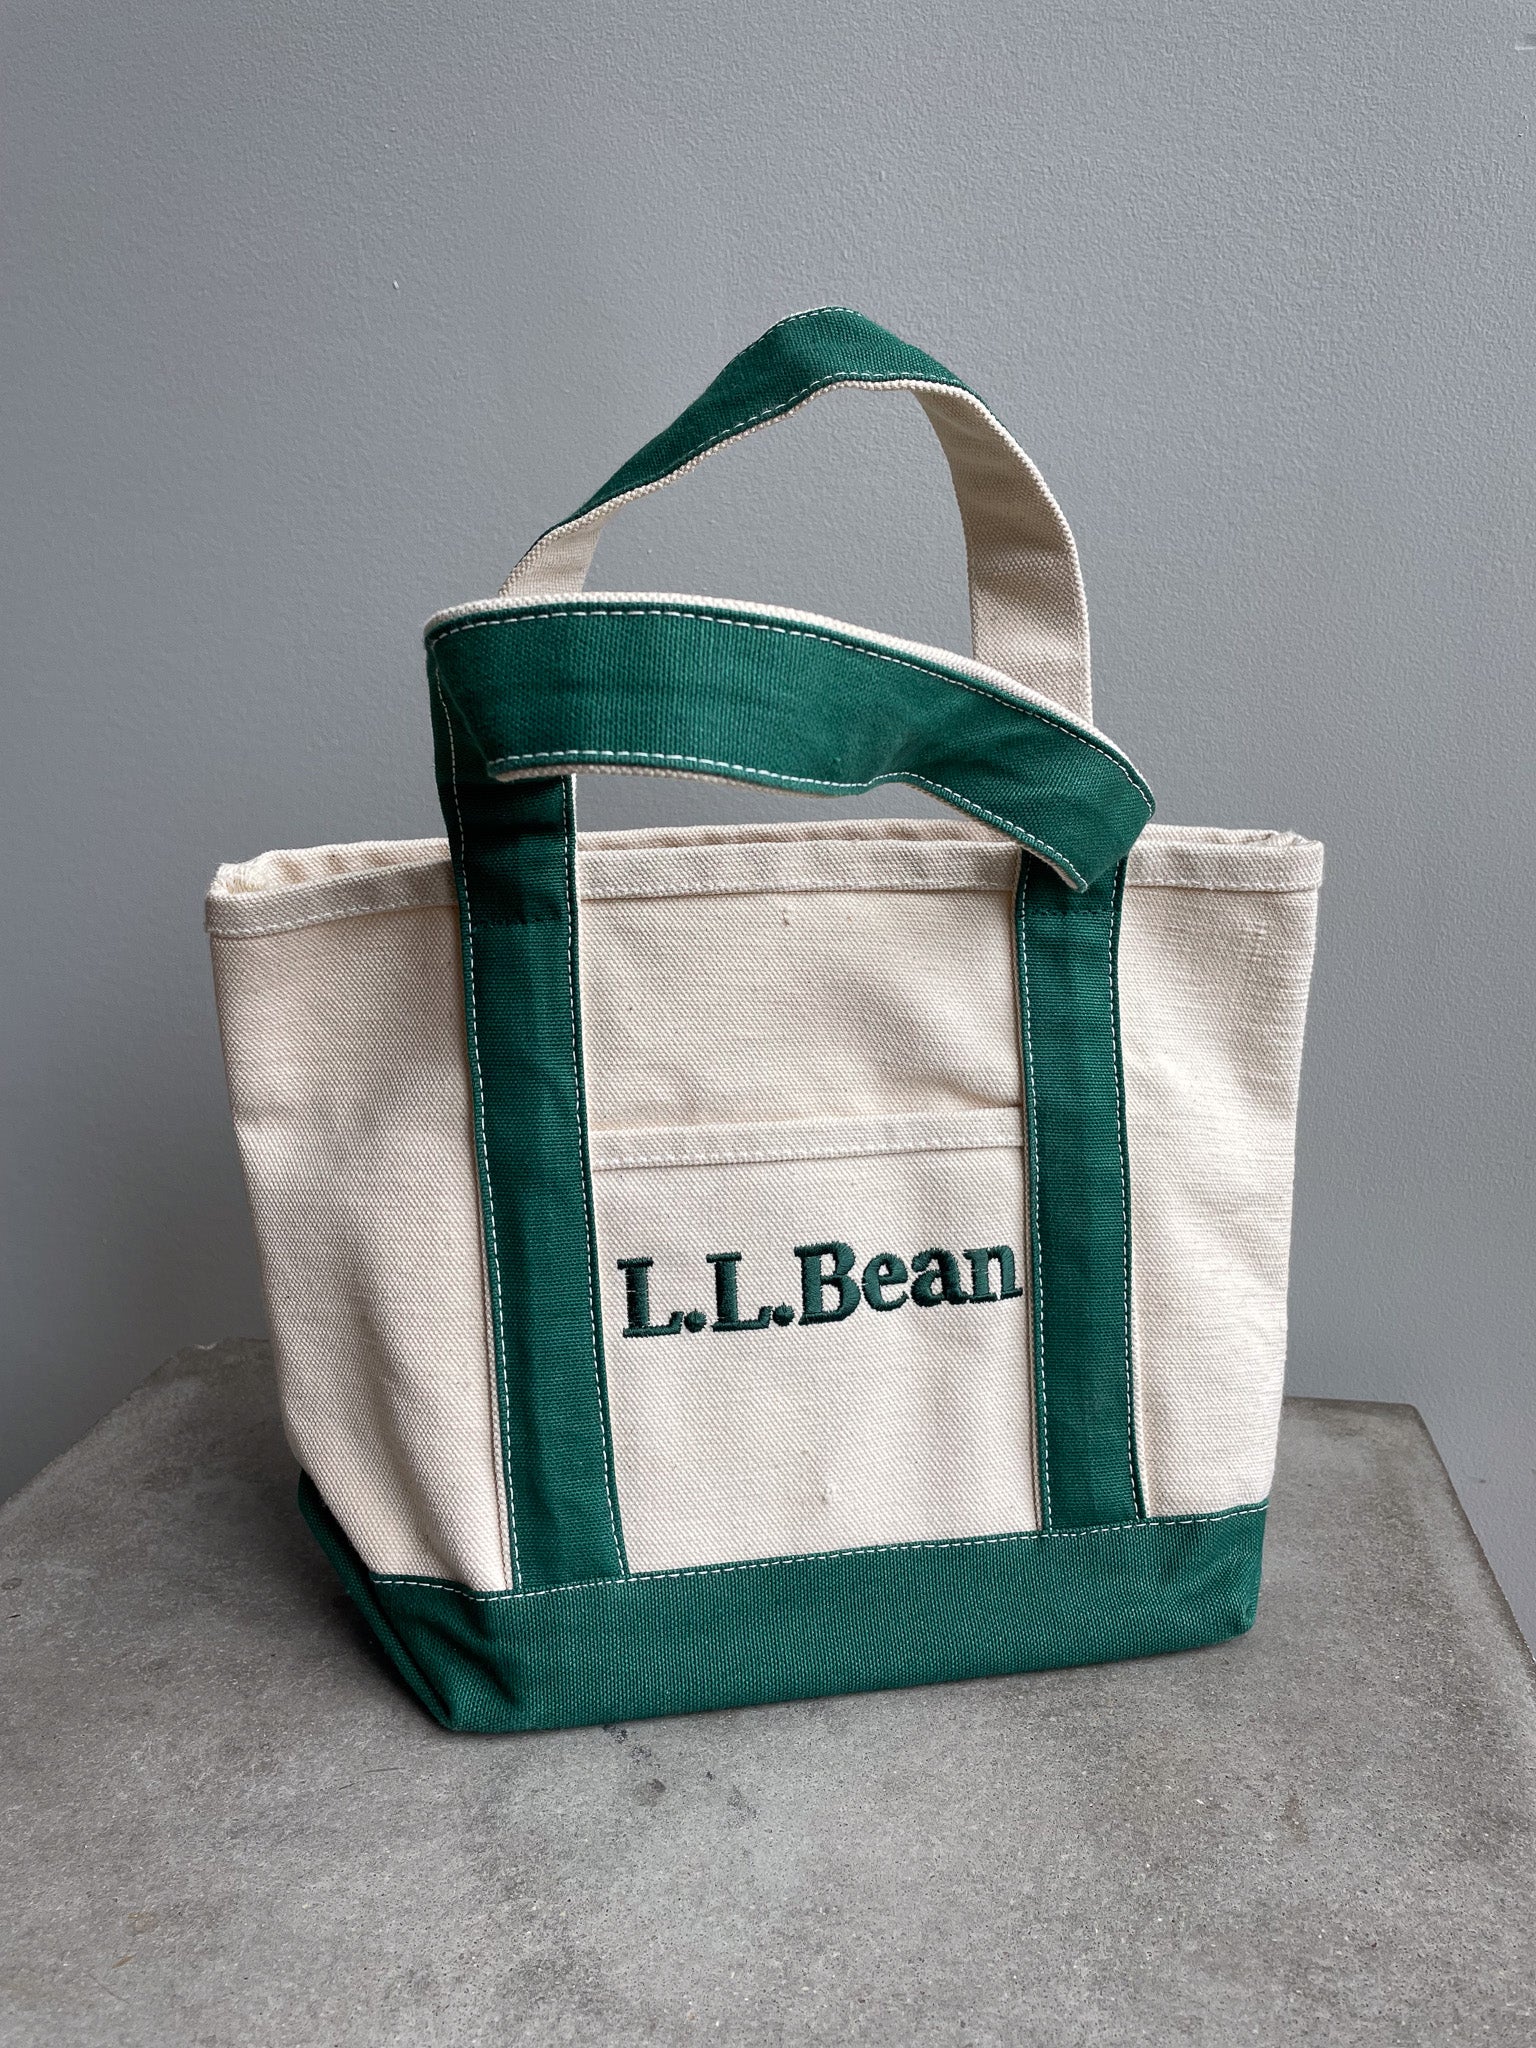 Ll Bean Canvas Tote Bag 